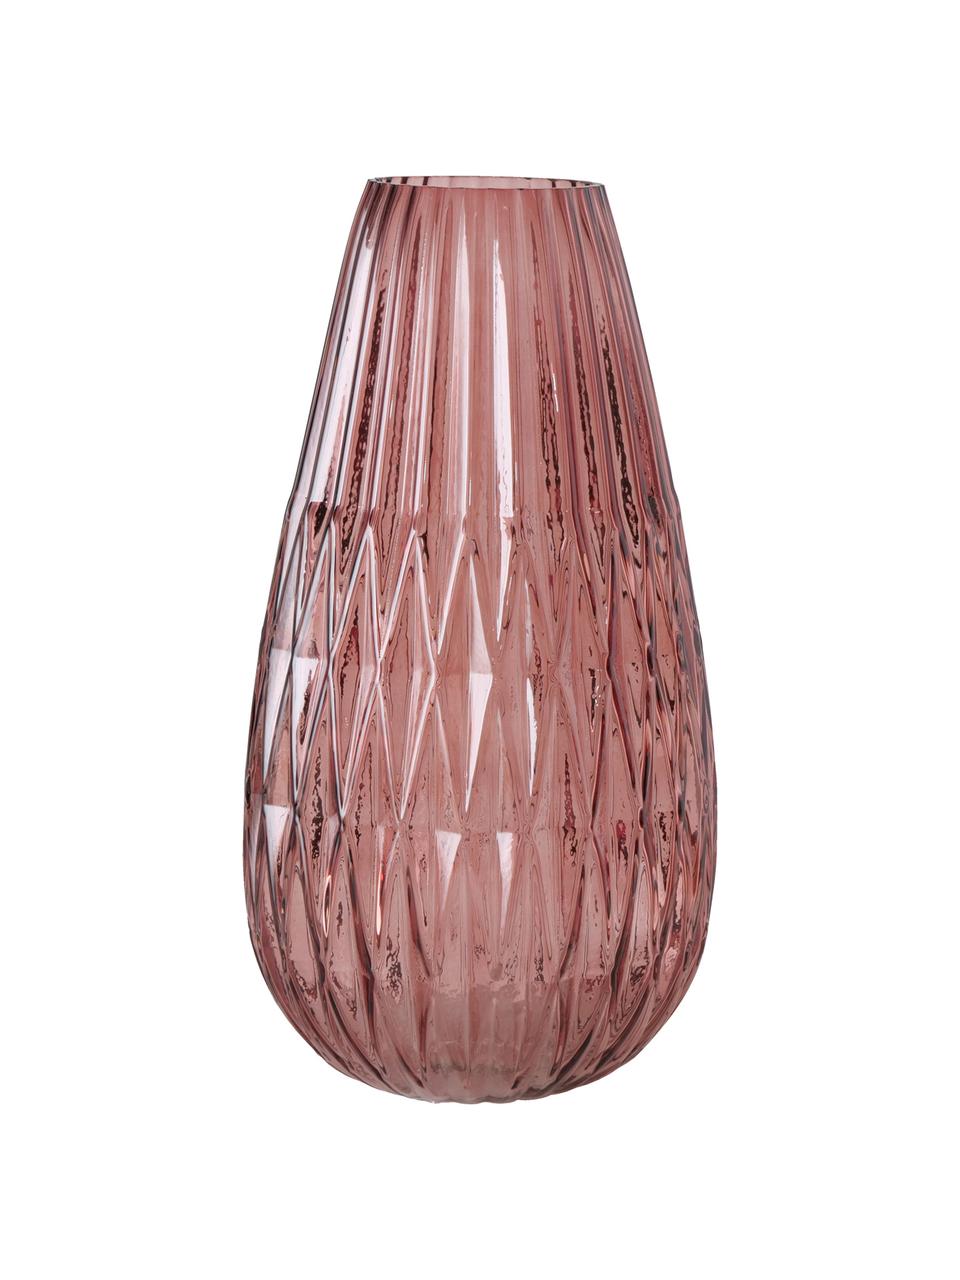 Veľká sklenená váza Rubina, Farbené sklo, Bledoružová, Ø 20 x V 36 cm